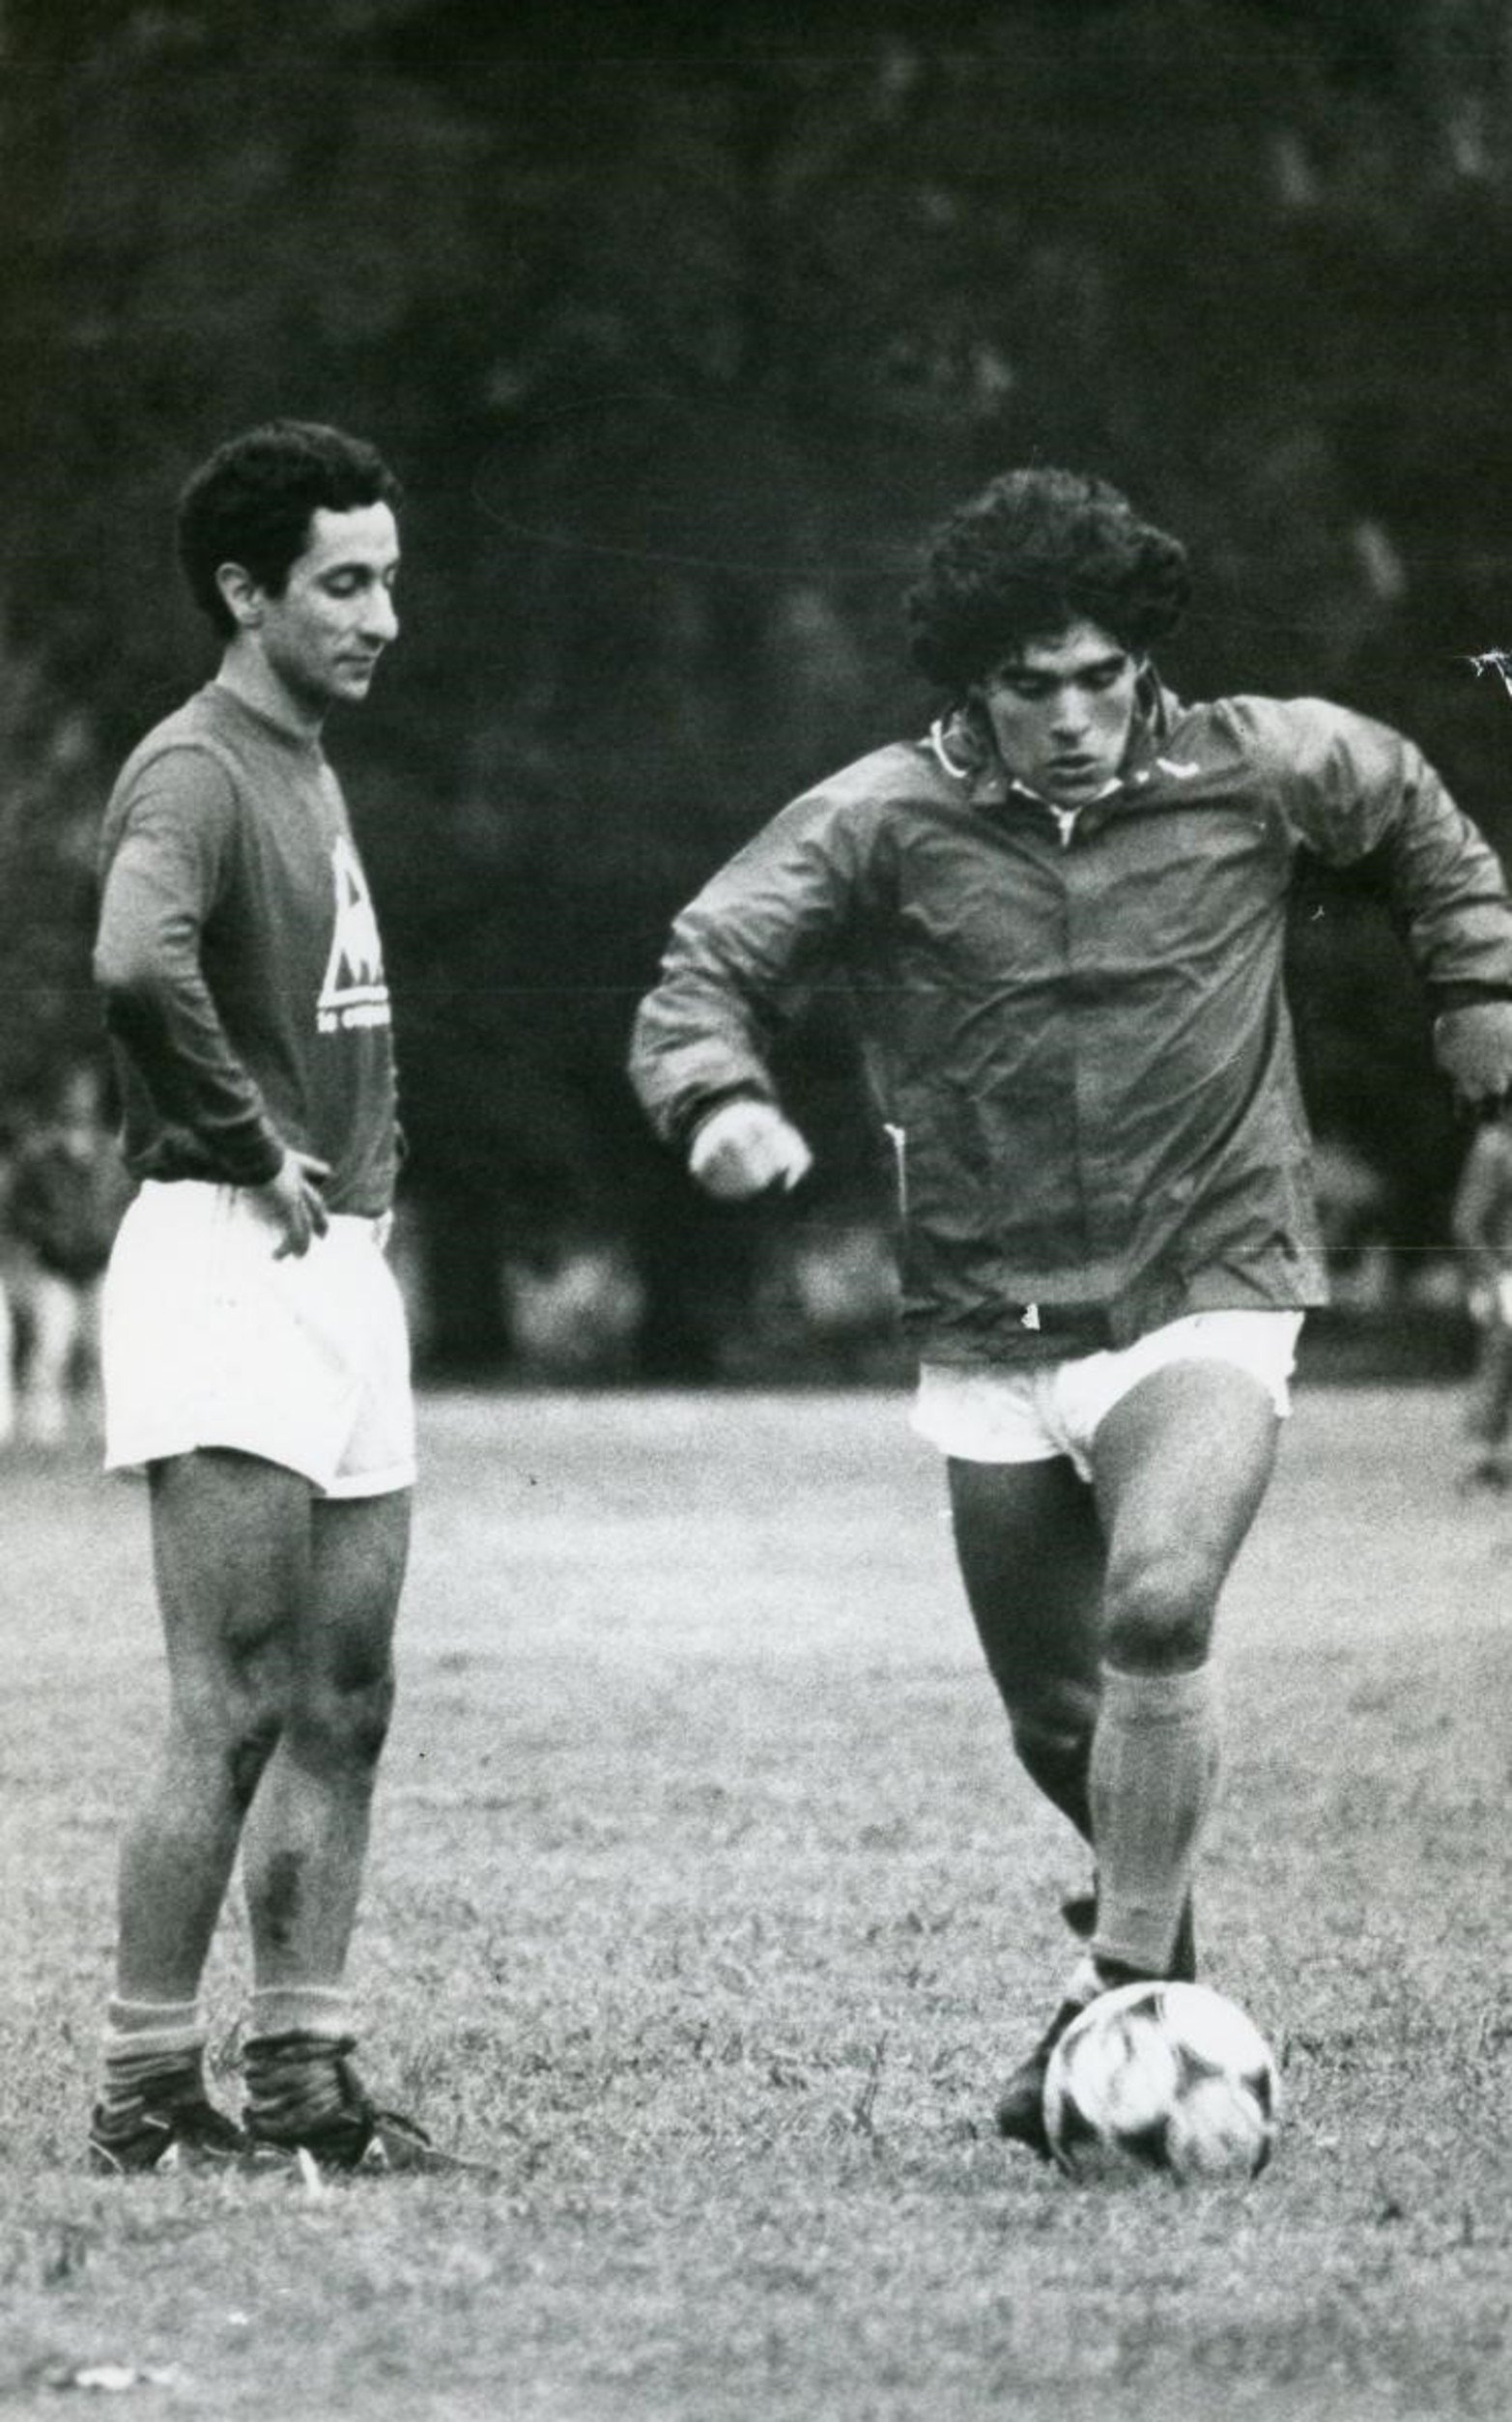 A dos años de su muerte, publican fotos inéditas de Diego Armando Maradona.